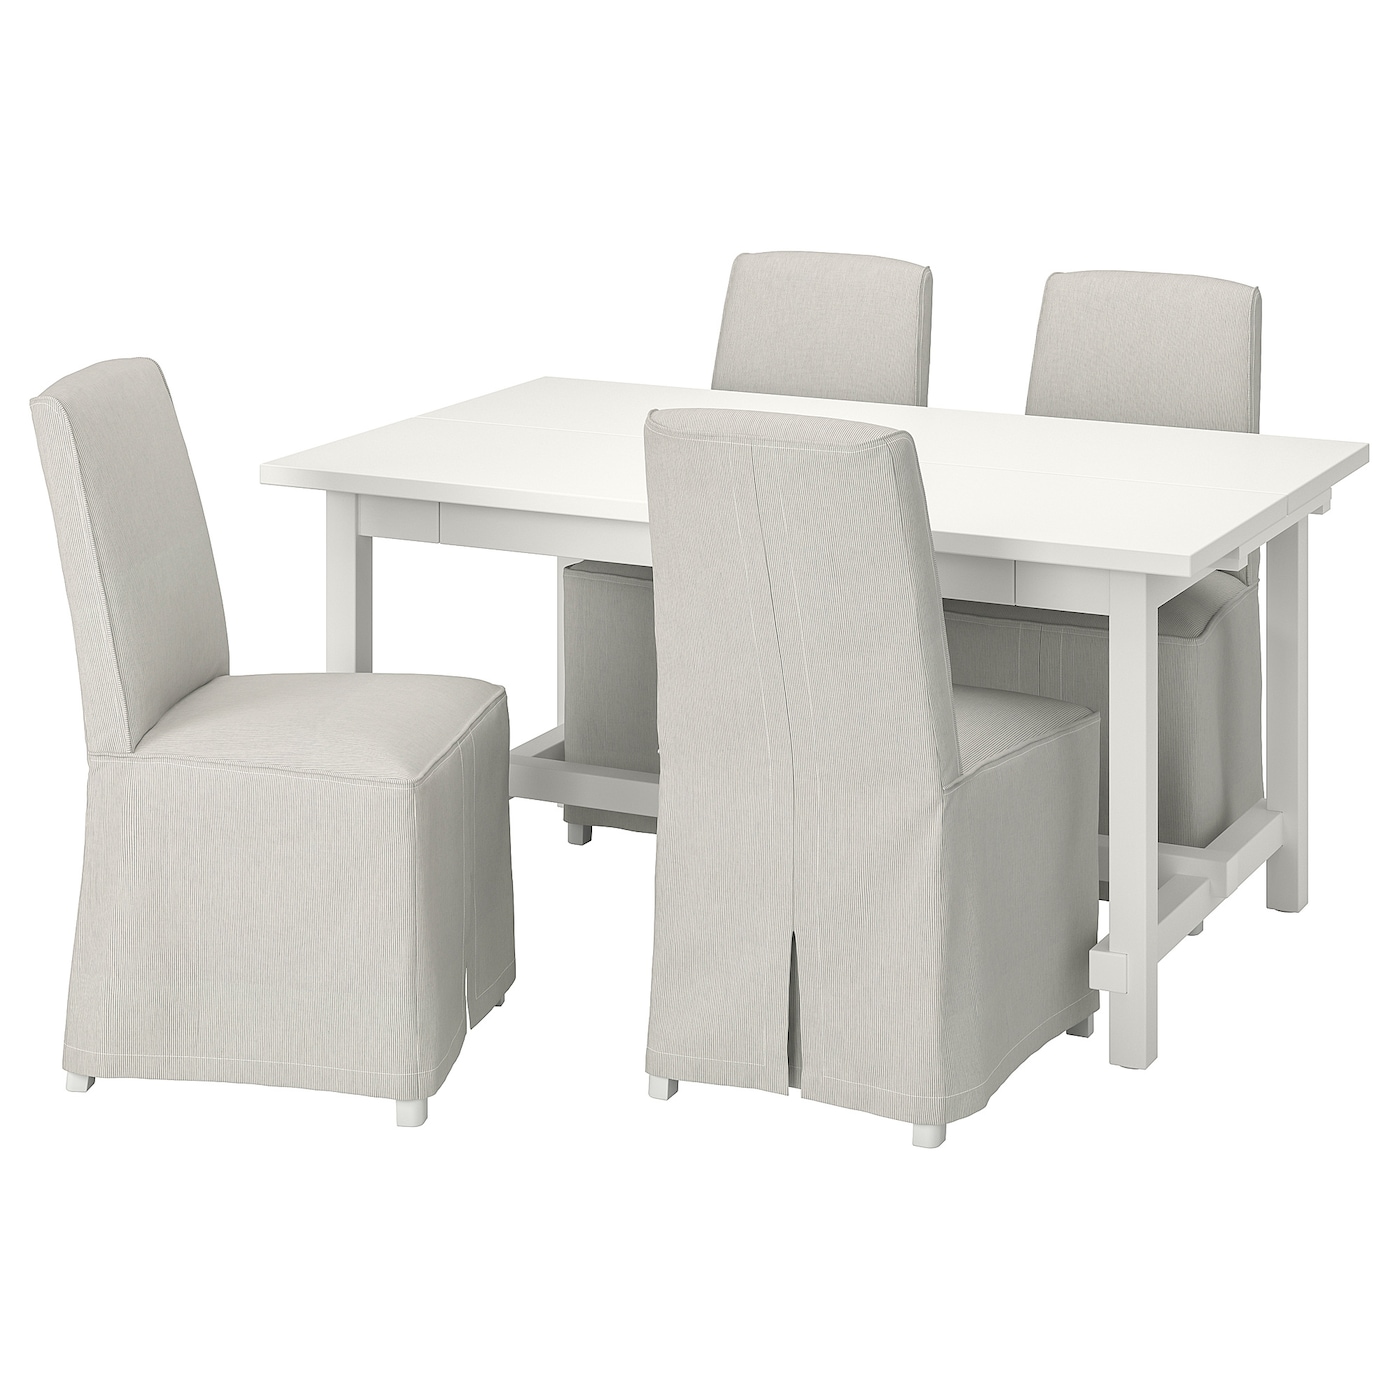 IKEA NORDVIKEN / BERGMUND Stół i 4 krzesła, biały/Kolboda beżowy/ciemnoszary, 152/223 cm